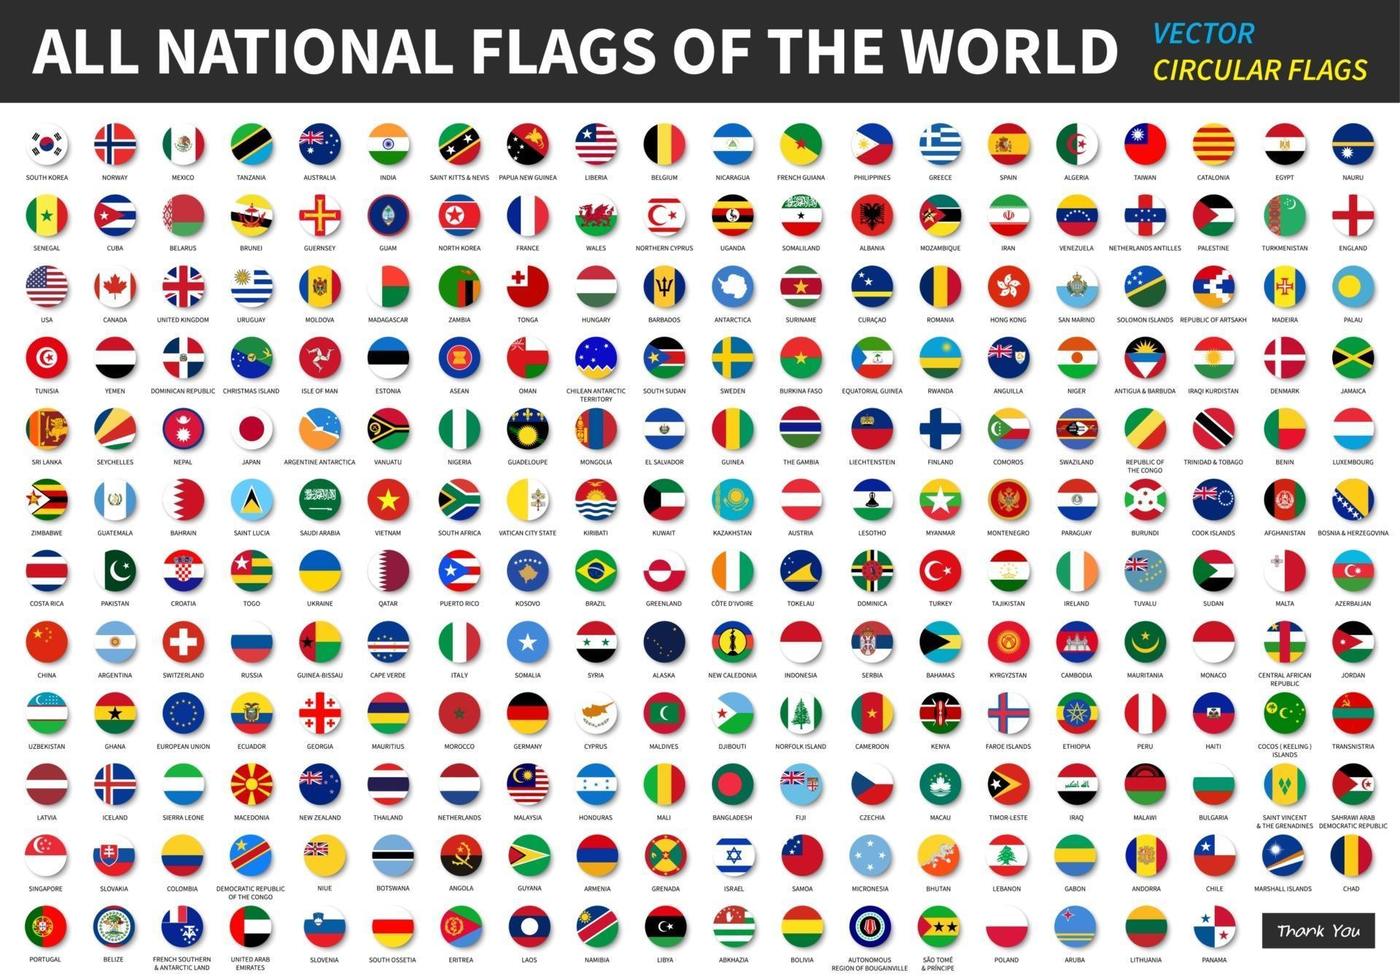 tous les drapeaux nationaux officiels du monde vecteur de conception circulaire